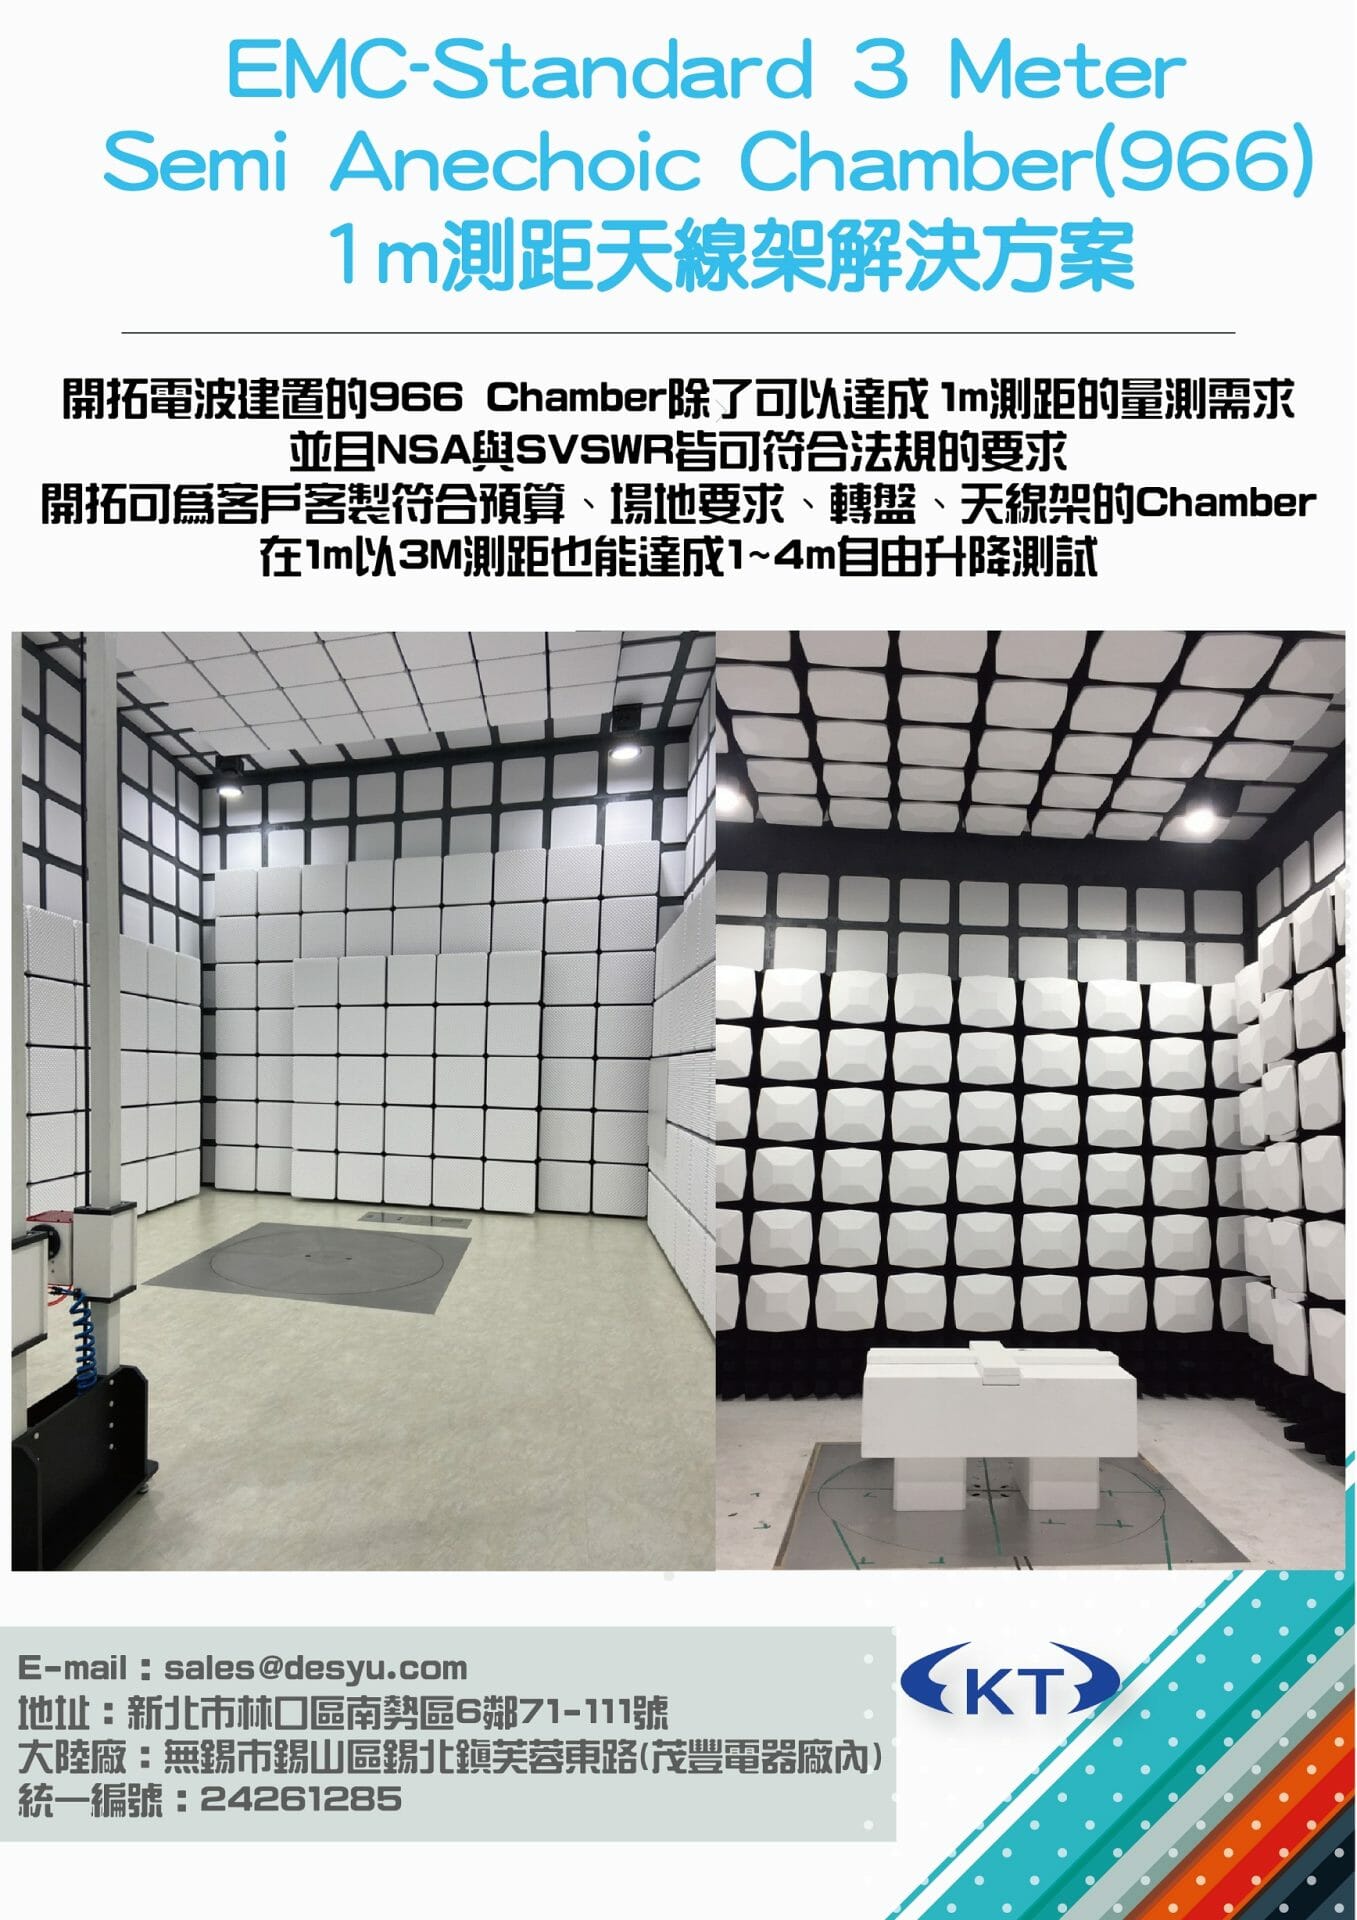 閱讀更多關於這篇文章 EMC-Standard 3 Meter Semi Anechoic Chamber(966) 1m測距天線架解決方案